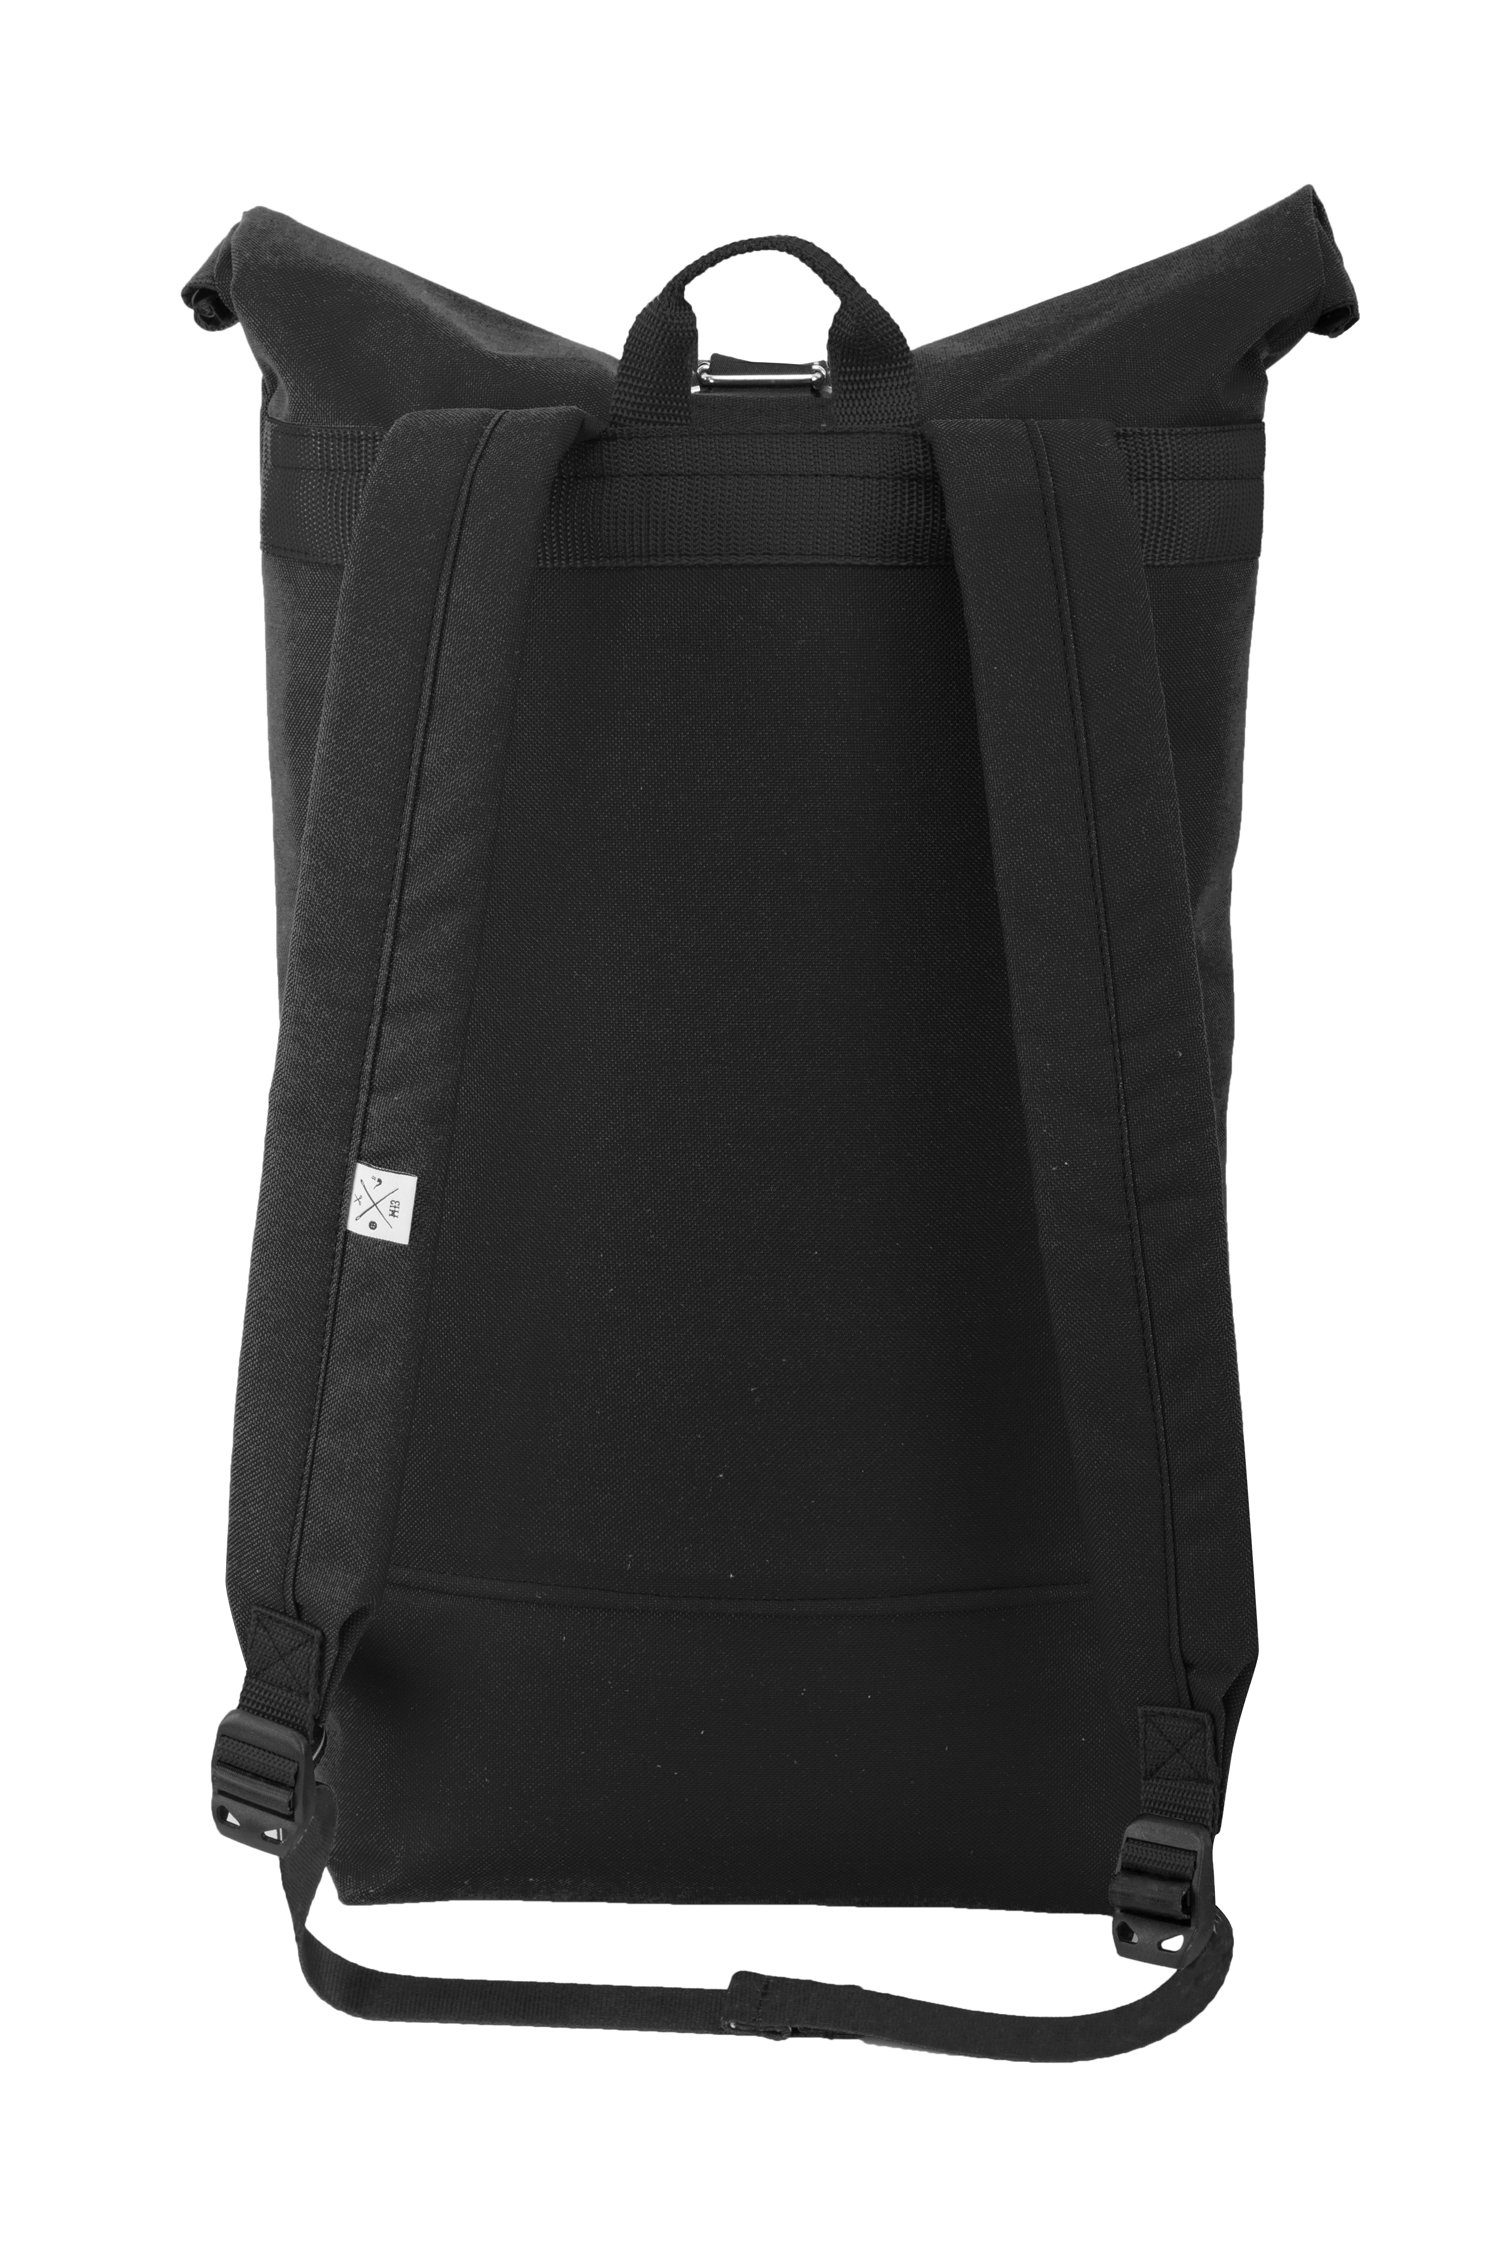 Roll-Top verstellbare wasserdicht/wasserabweisend, Rollverschluss, - Out mit Black Backpack Rucksack Manufaktur13 Tagesrucksack Gurte